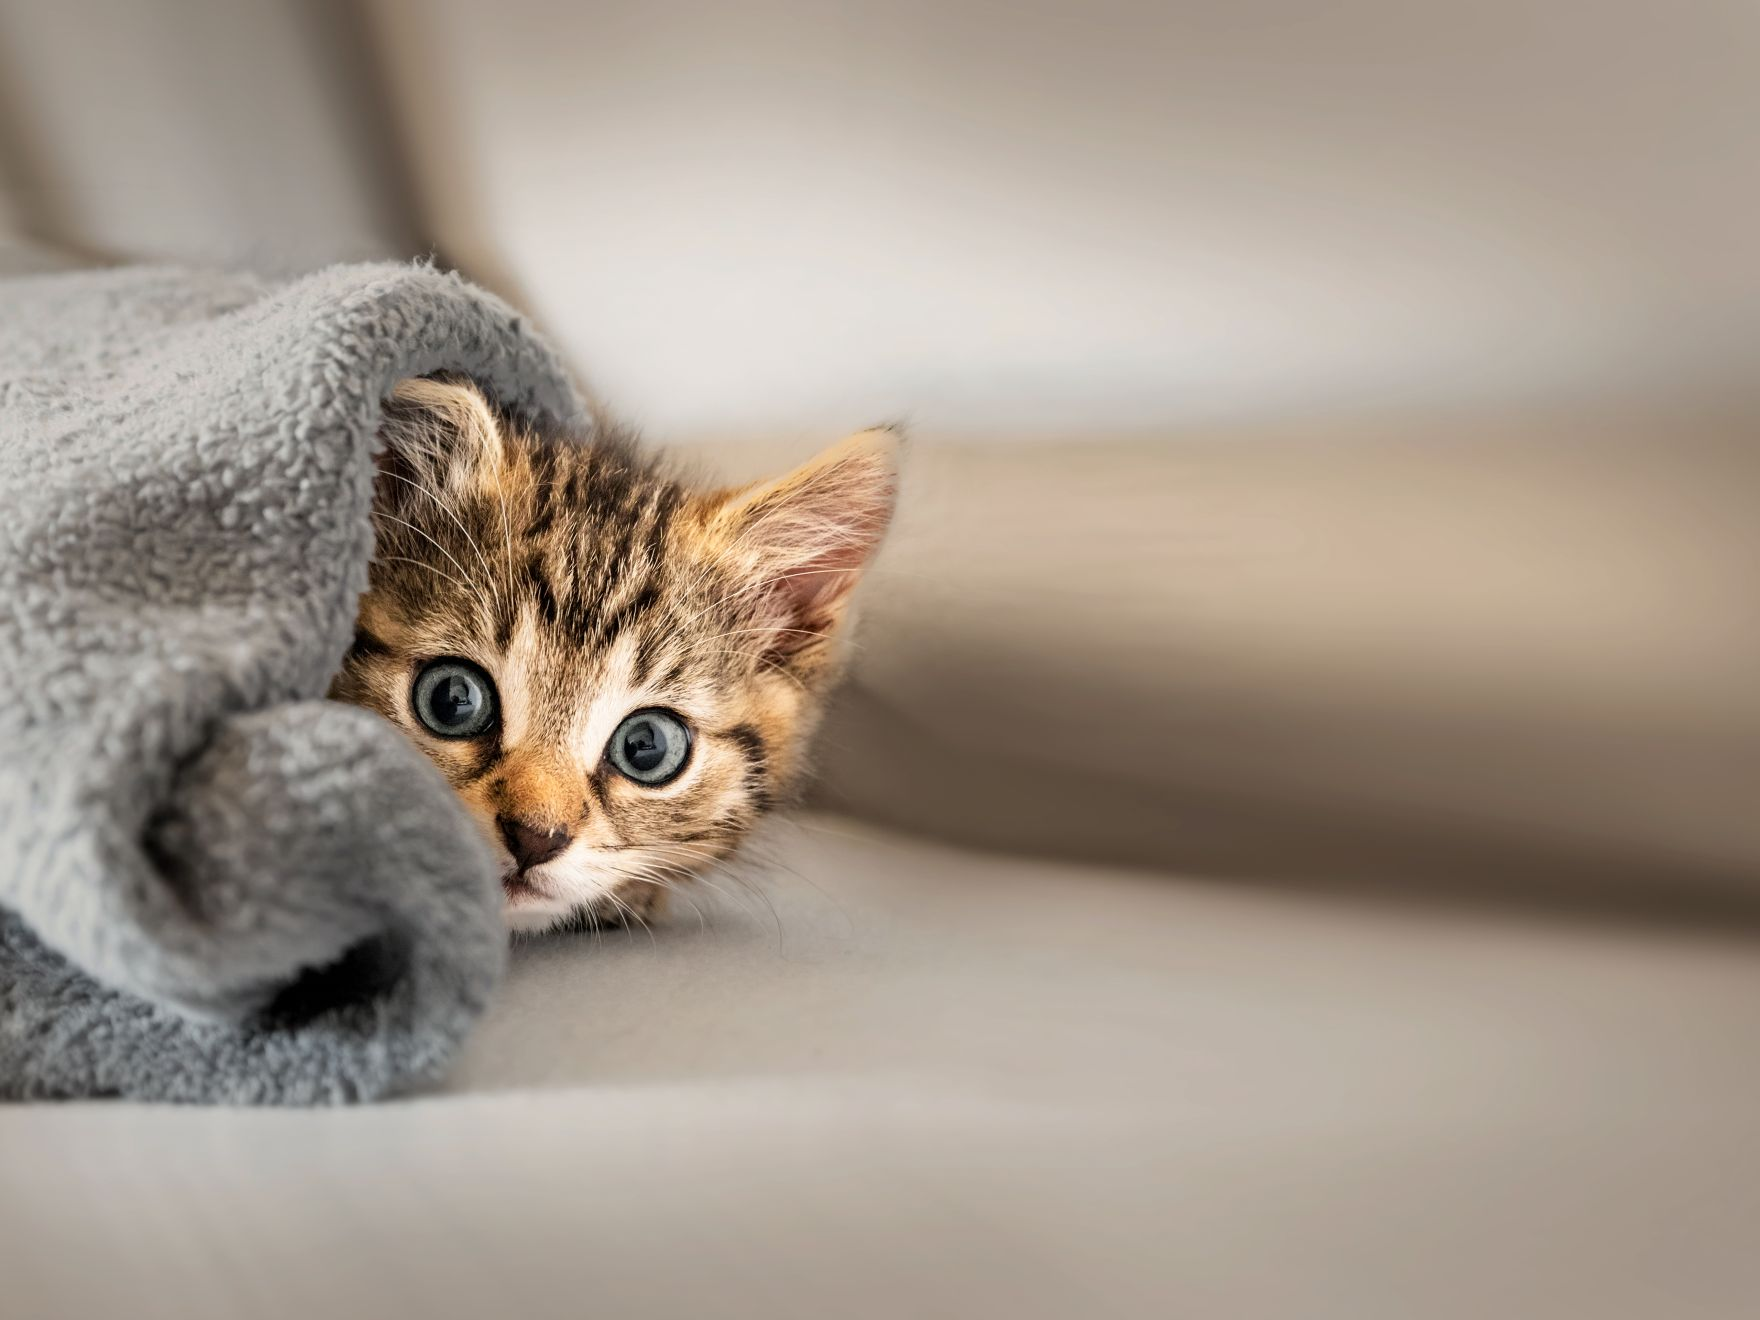 Kitten lying down under a grey blanket